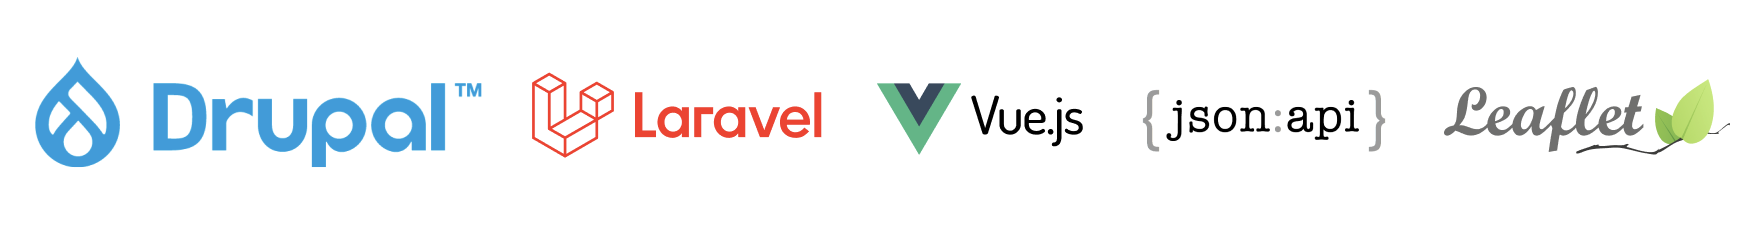 Logo's van Drupal, Laravel, VueJs, JSON:API en Leaflet